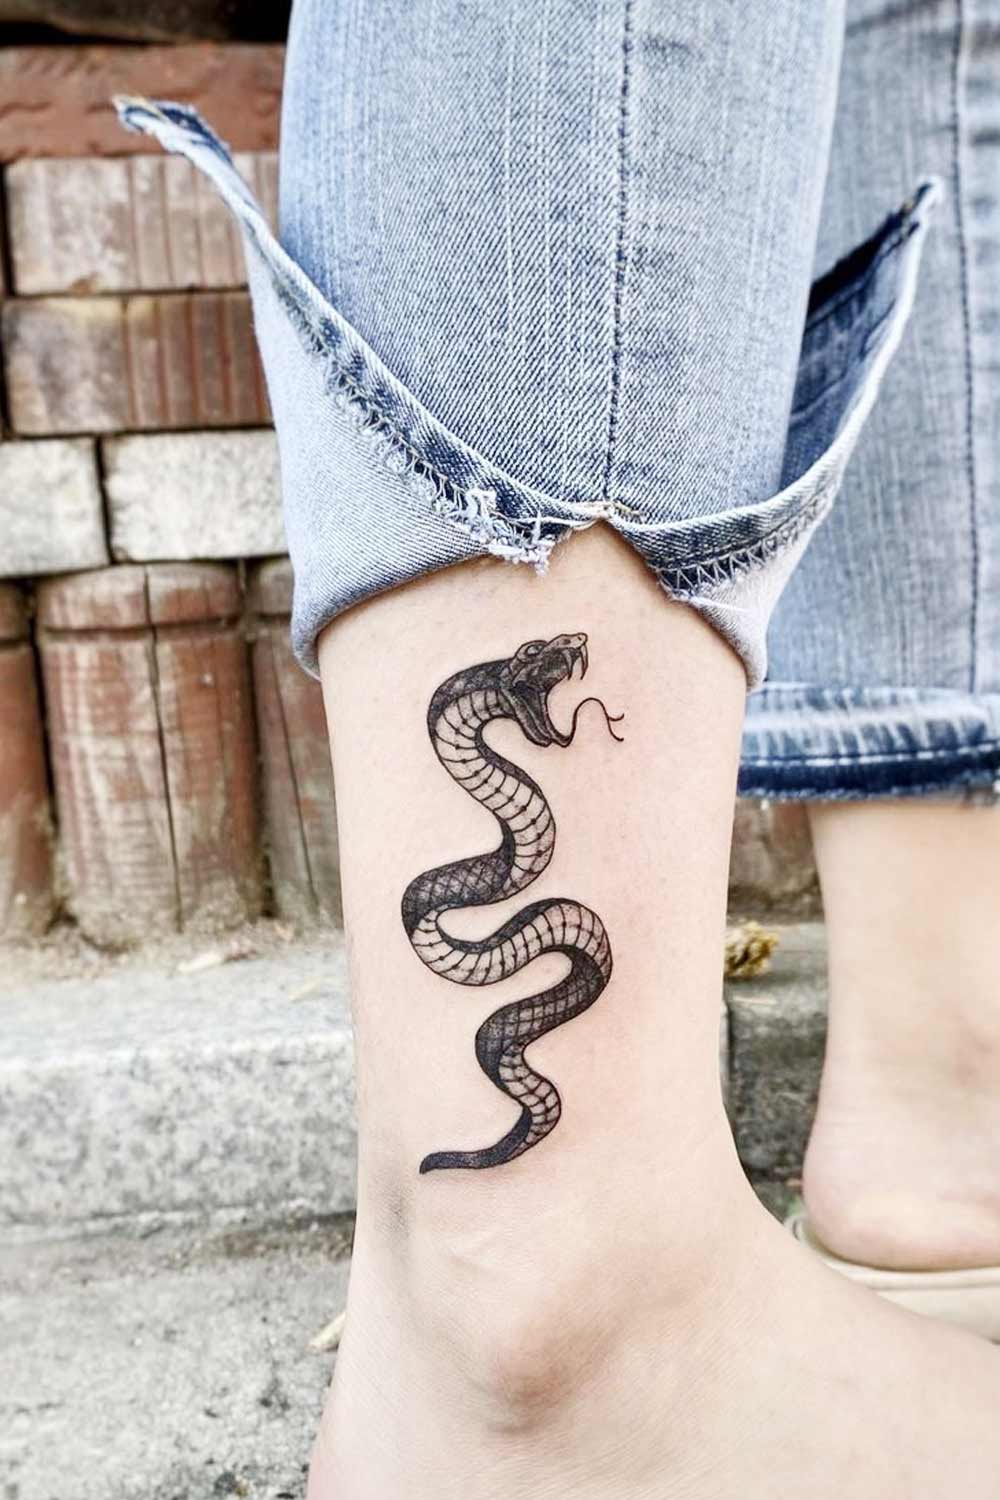 Small Minimalist Snake Tattoo on Ankle